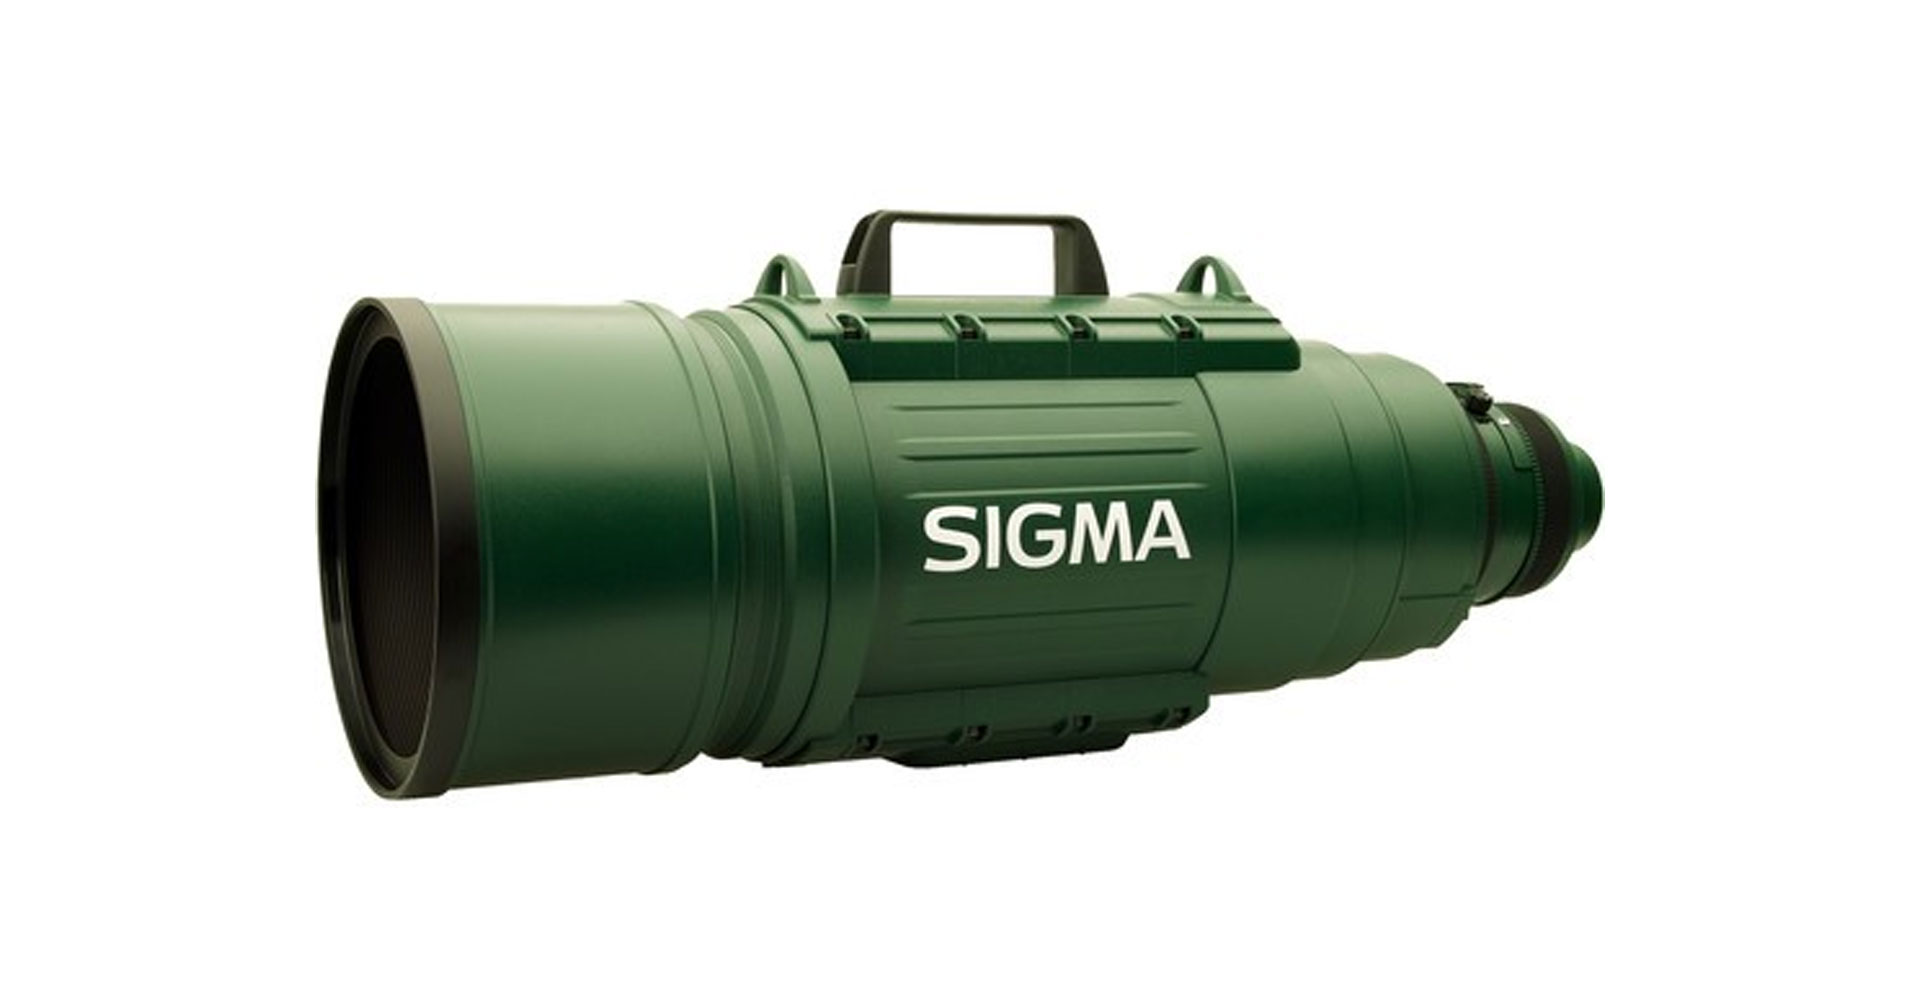 ยุติการผลิตแล้ว ! SIGMA APO 200-500mm F2.8 EX DG เลนส์ซูมซูเปอร์เทเลโฟโตระดับตำนาน ในยุค DSLR